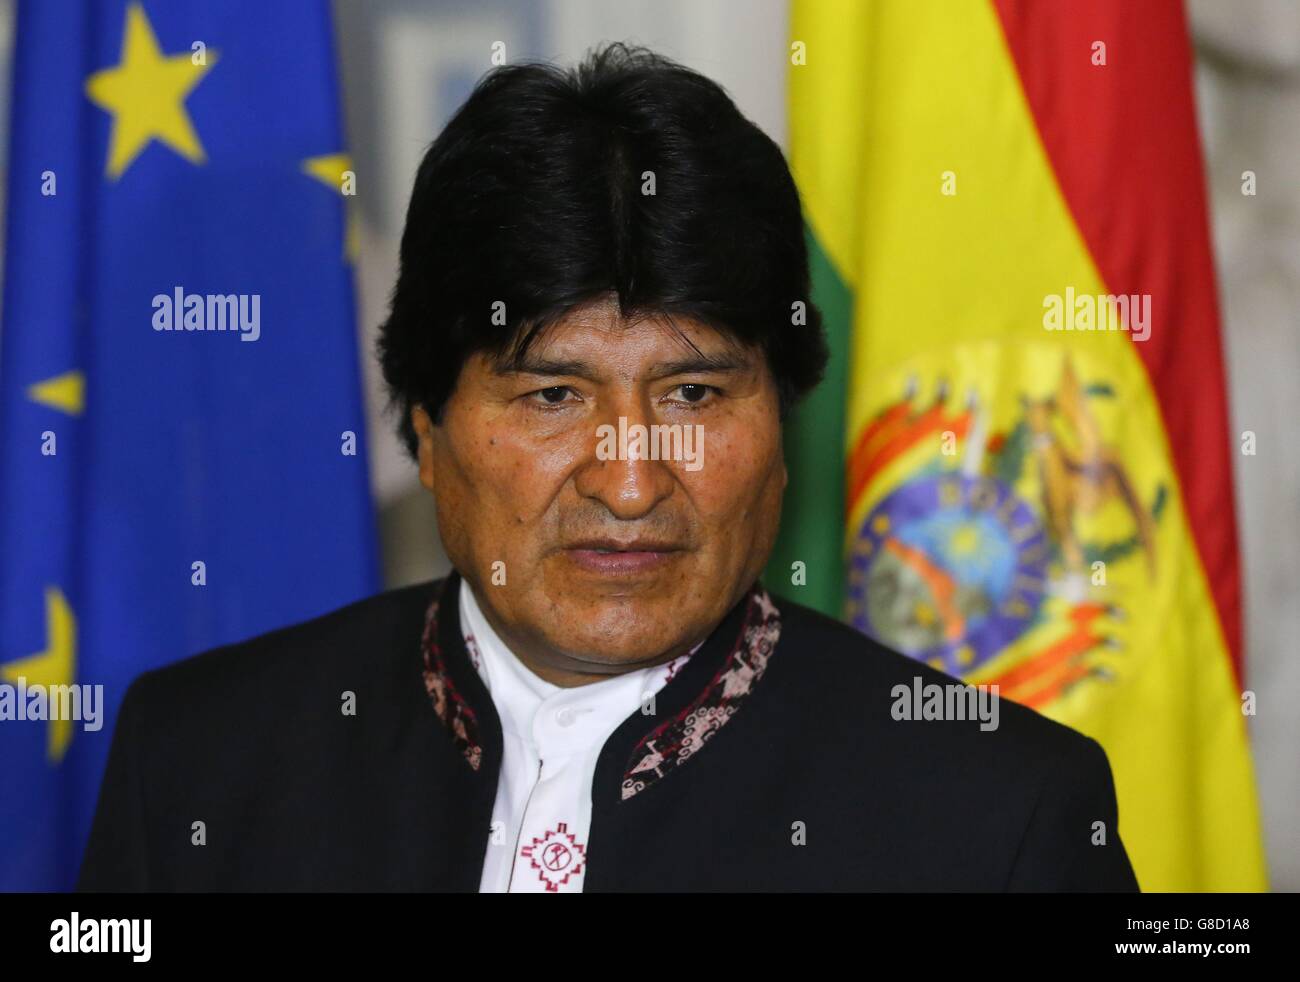 Il presidente boliviano Evo Morales giunge a un incontro con il ministro degli Affari Esteri Charlie Flanagan al Dipartimento degli Affari Esteri di Dublino, Irlanda. Foto Stock